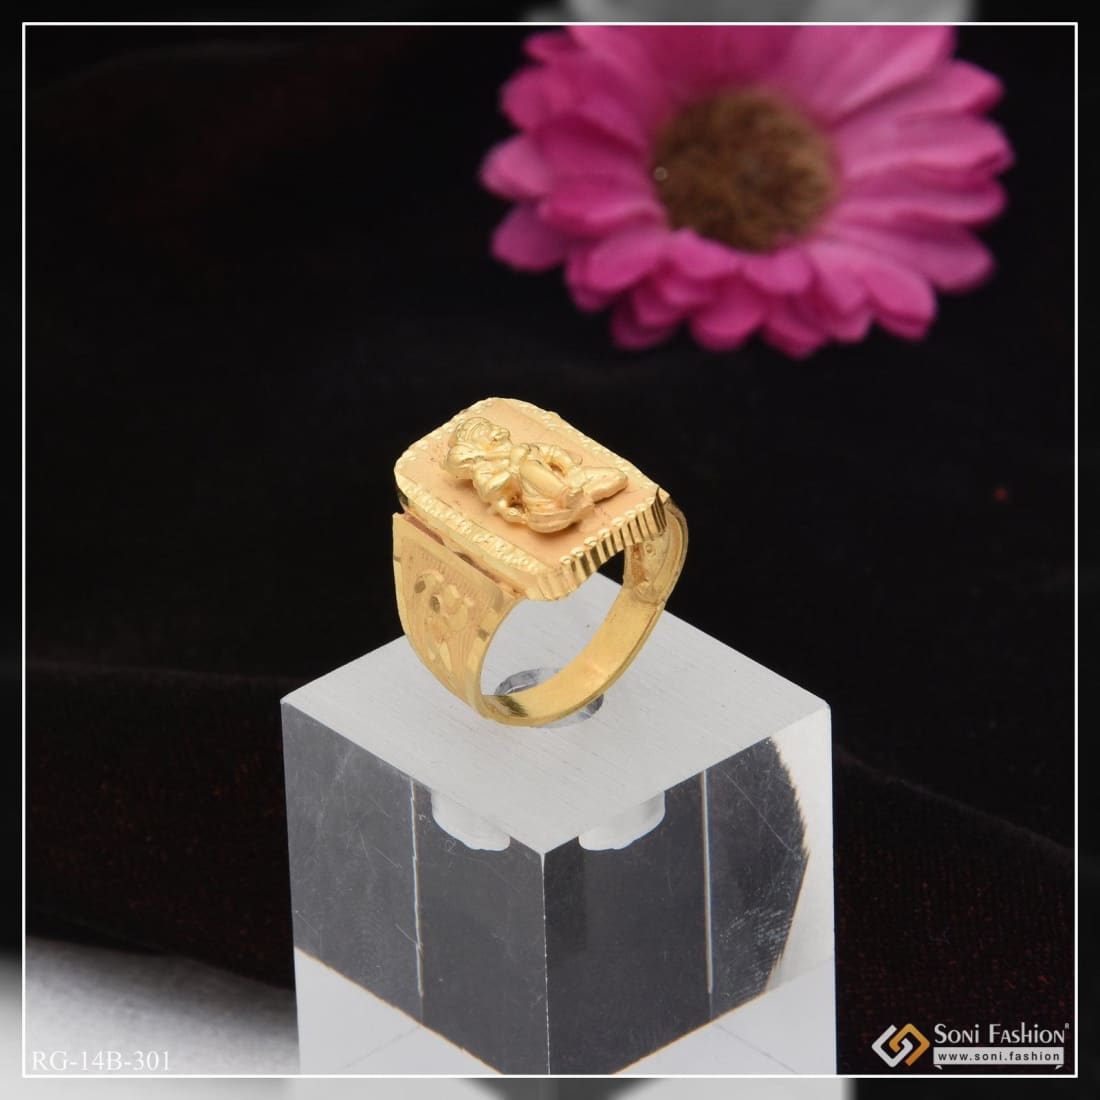 22K Gold 'Hanumanji' Ring For Men - 235-GR5550 in 8.300 Grams